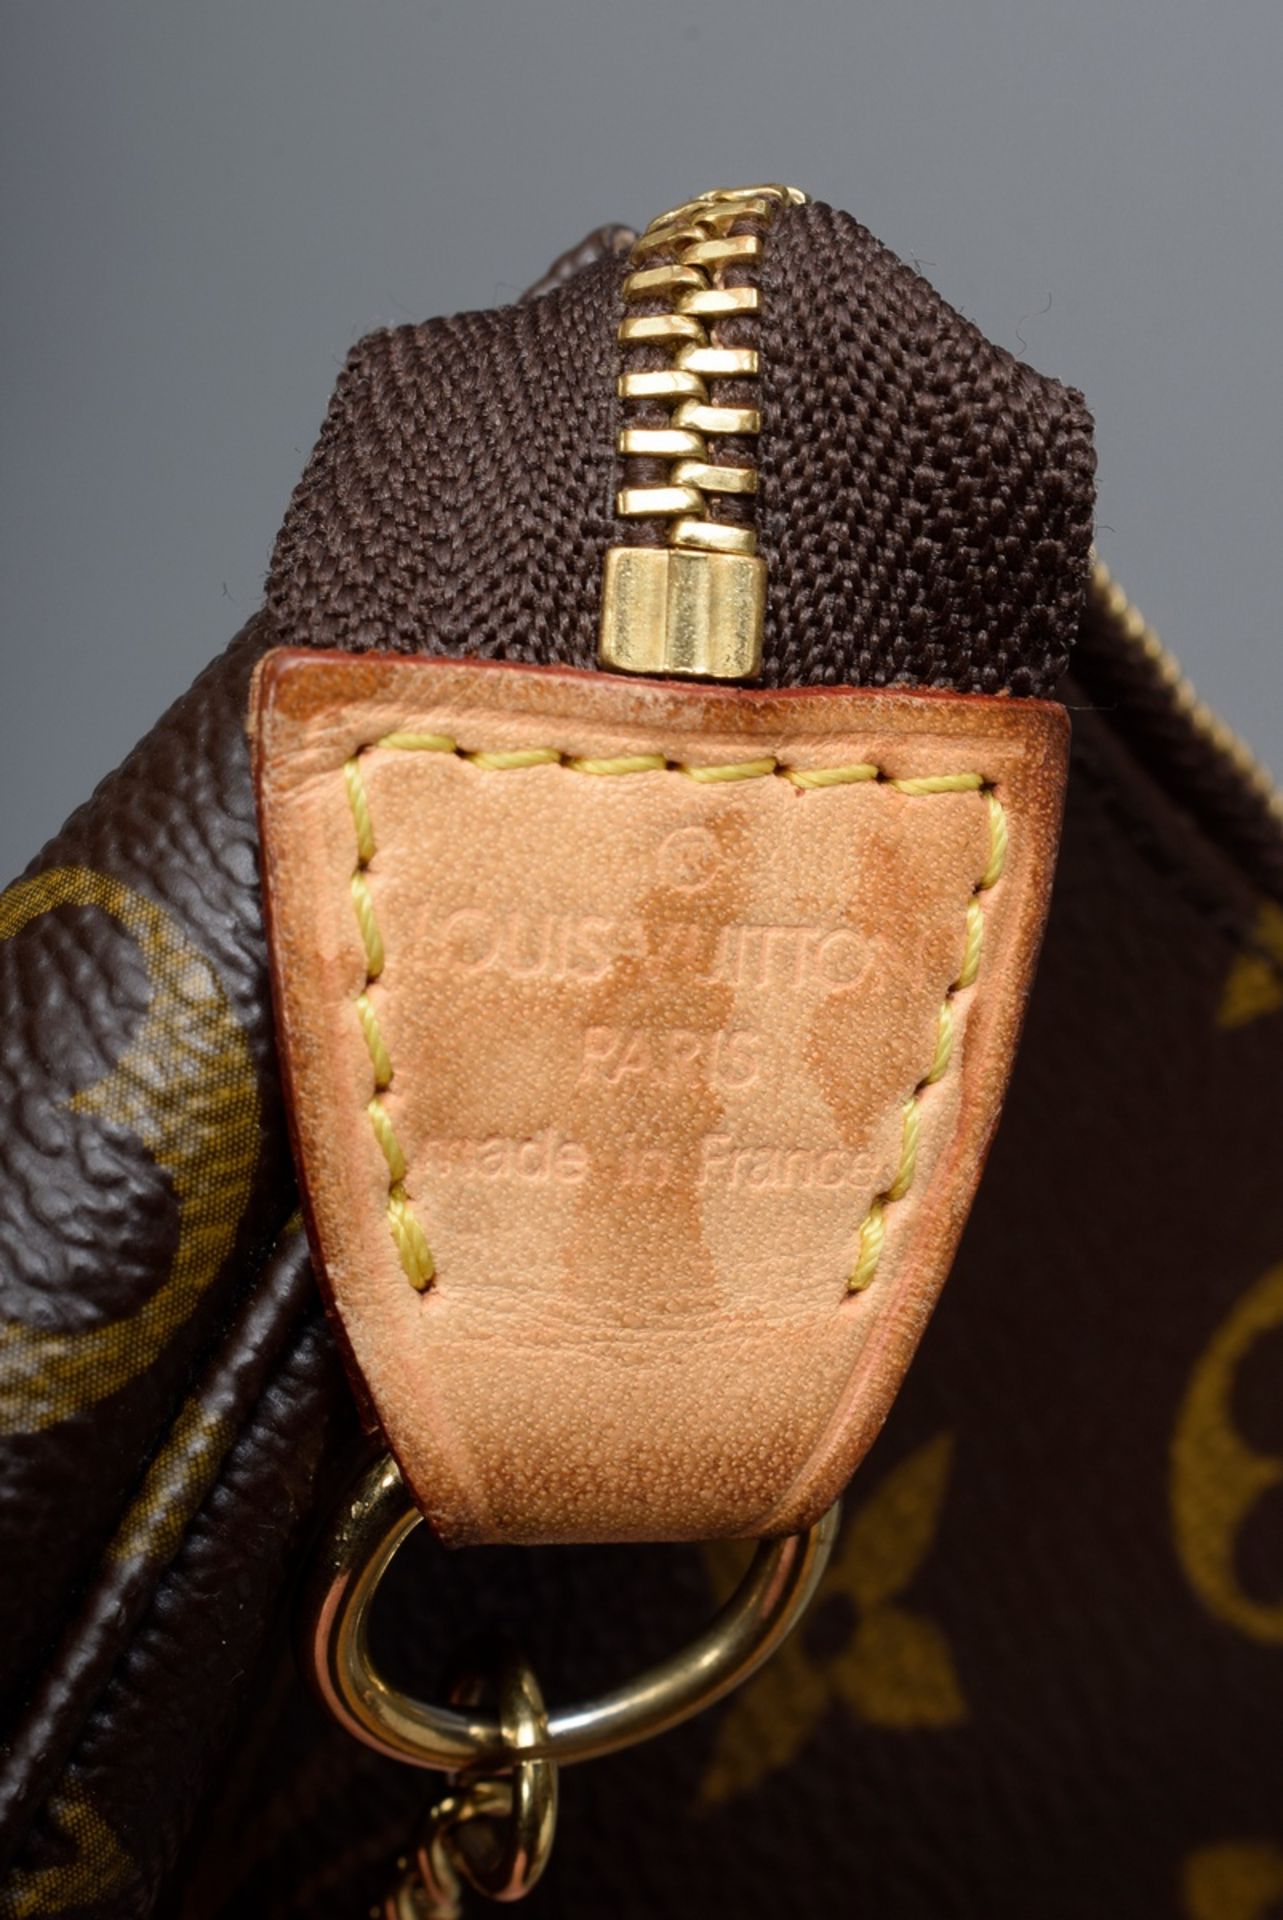 Louis Vuitton "Pochette Accessoire" mit Goldkett | Louis Vuitton "Pochette Accessoire" with gold ch - Bild 3 aus 4